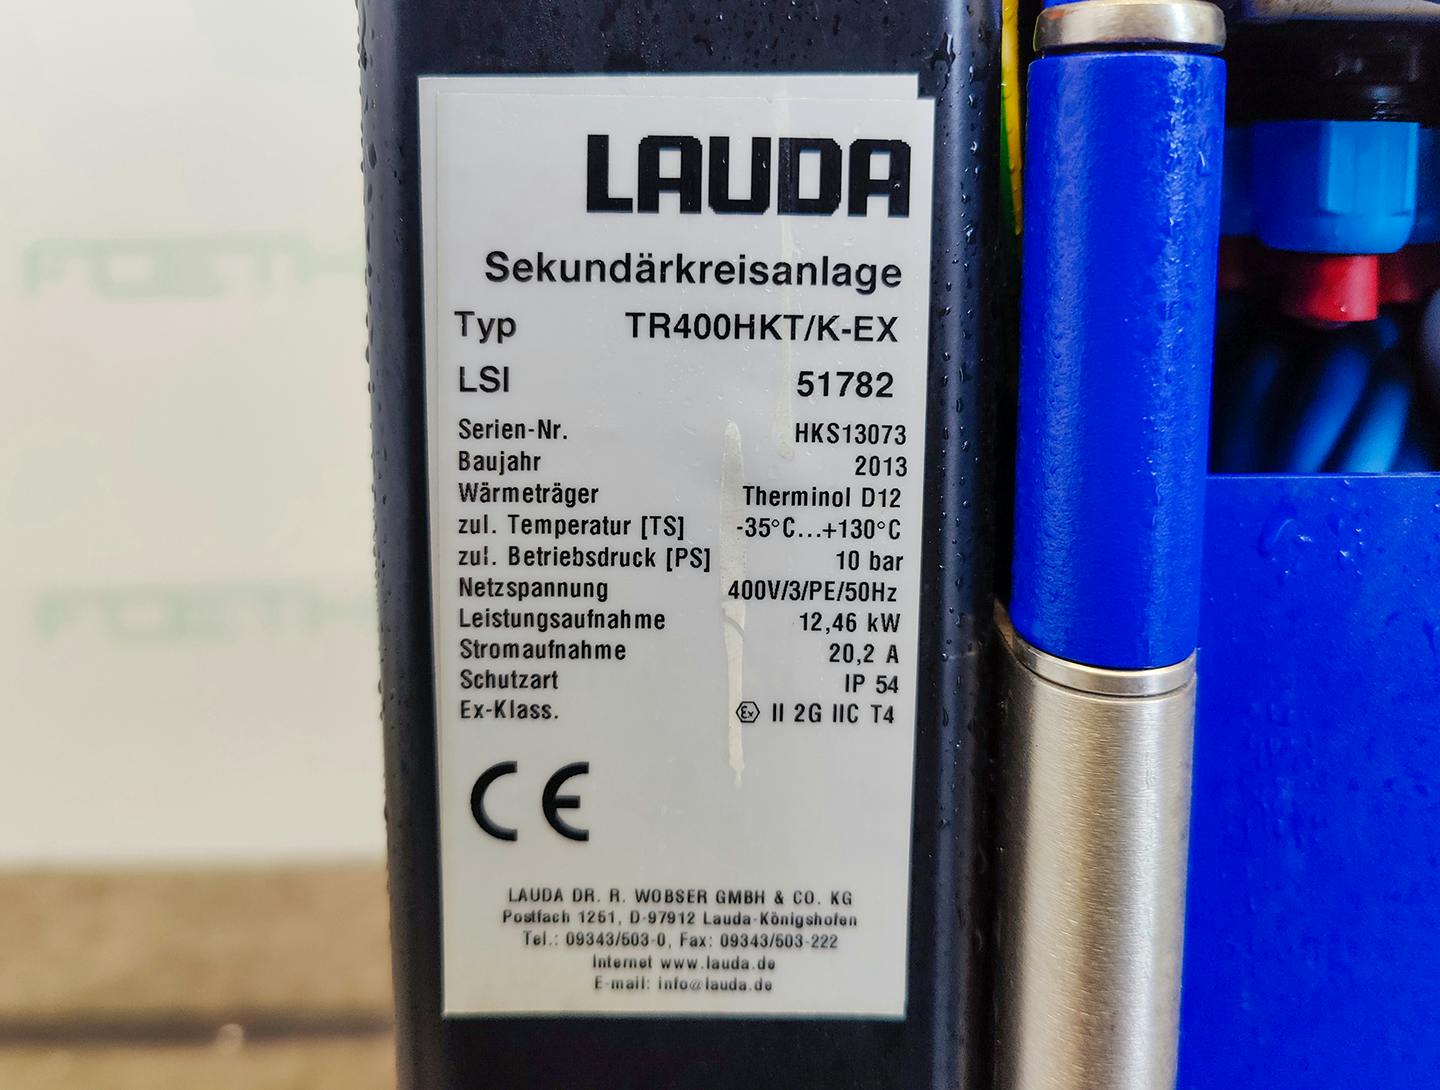 Lauda TR400 HKT/K-EX "secondary circuit system" - Temperature control unit - image 6